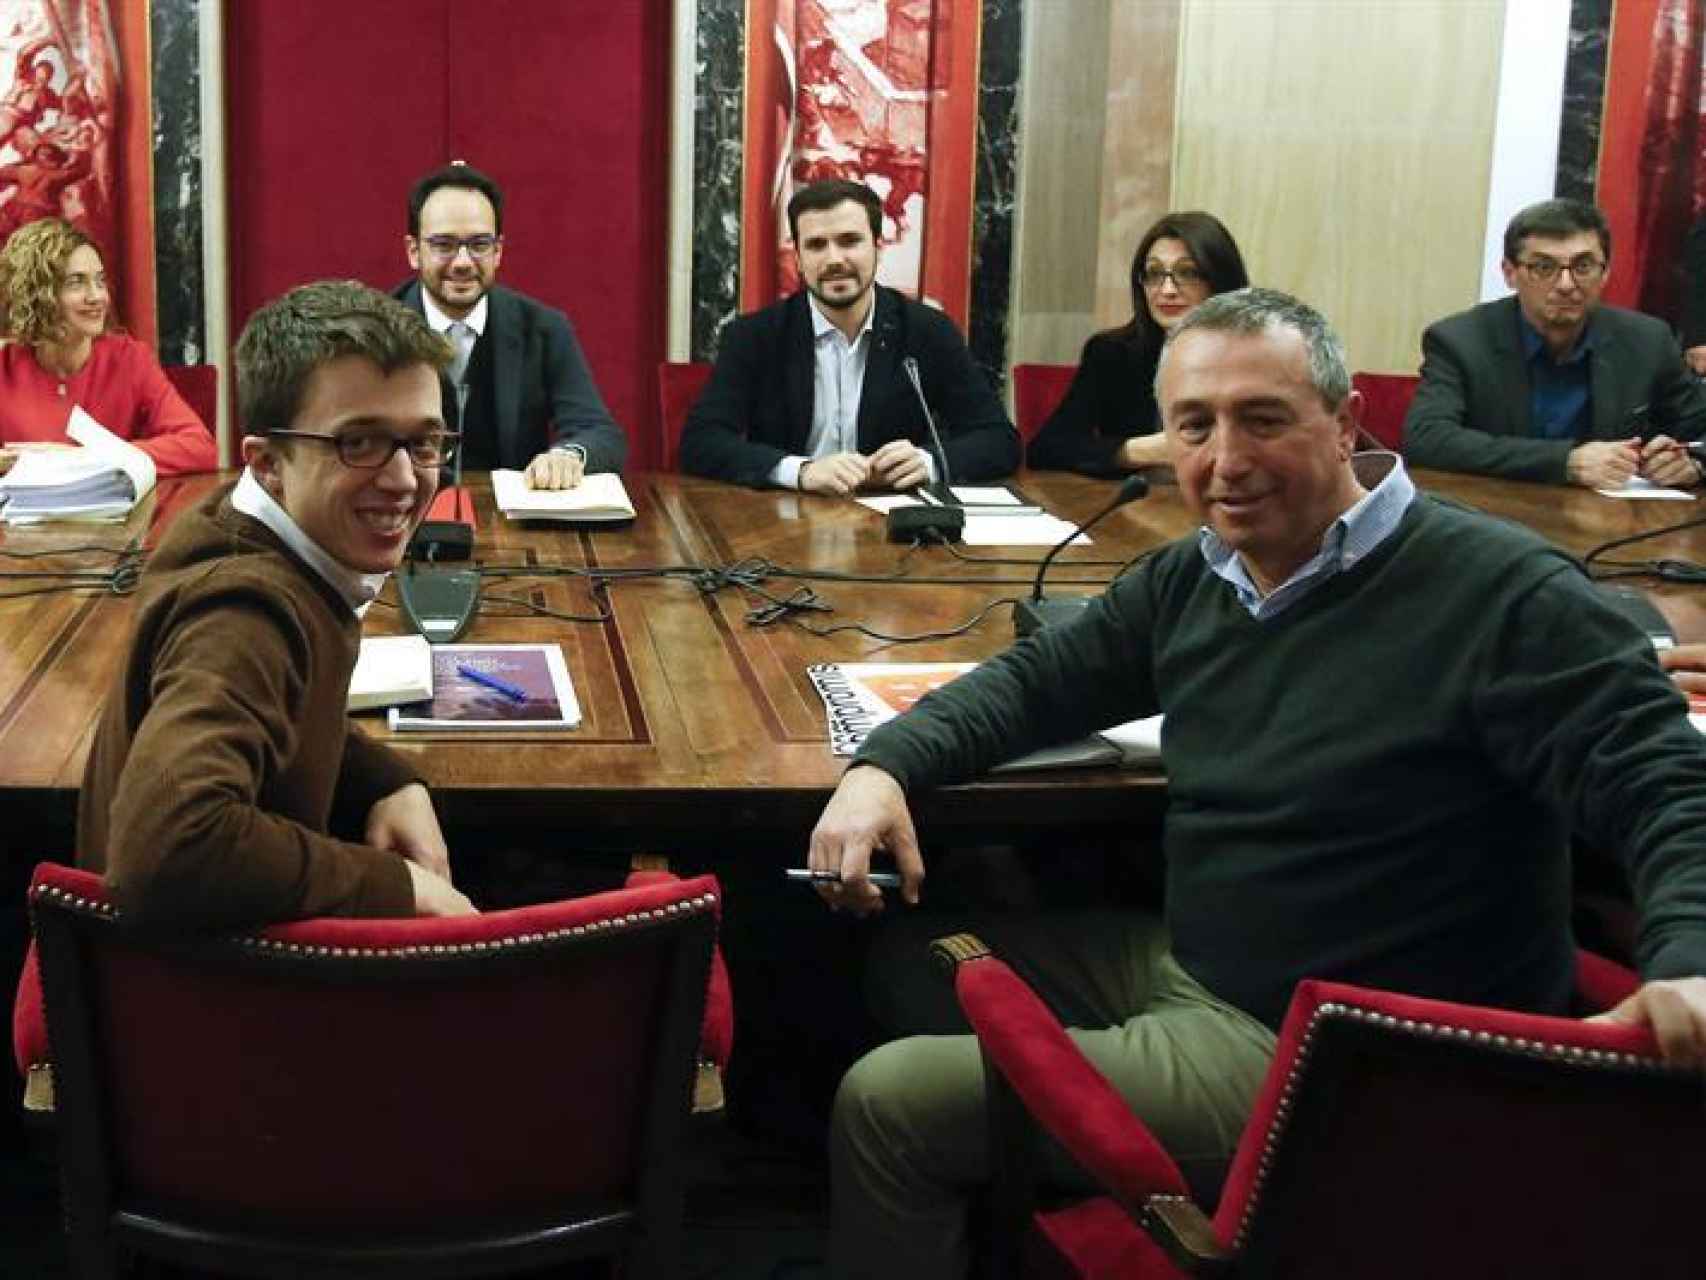 Errejón ha capitaneado el equipo negociador de Podemos en el Congreso